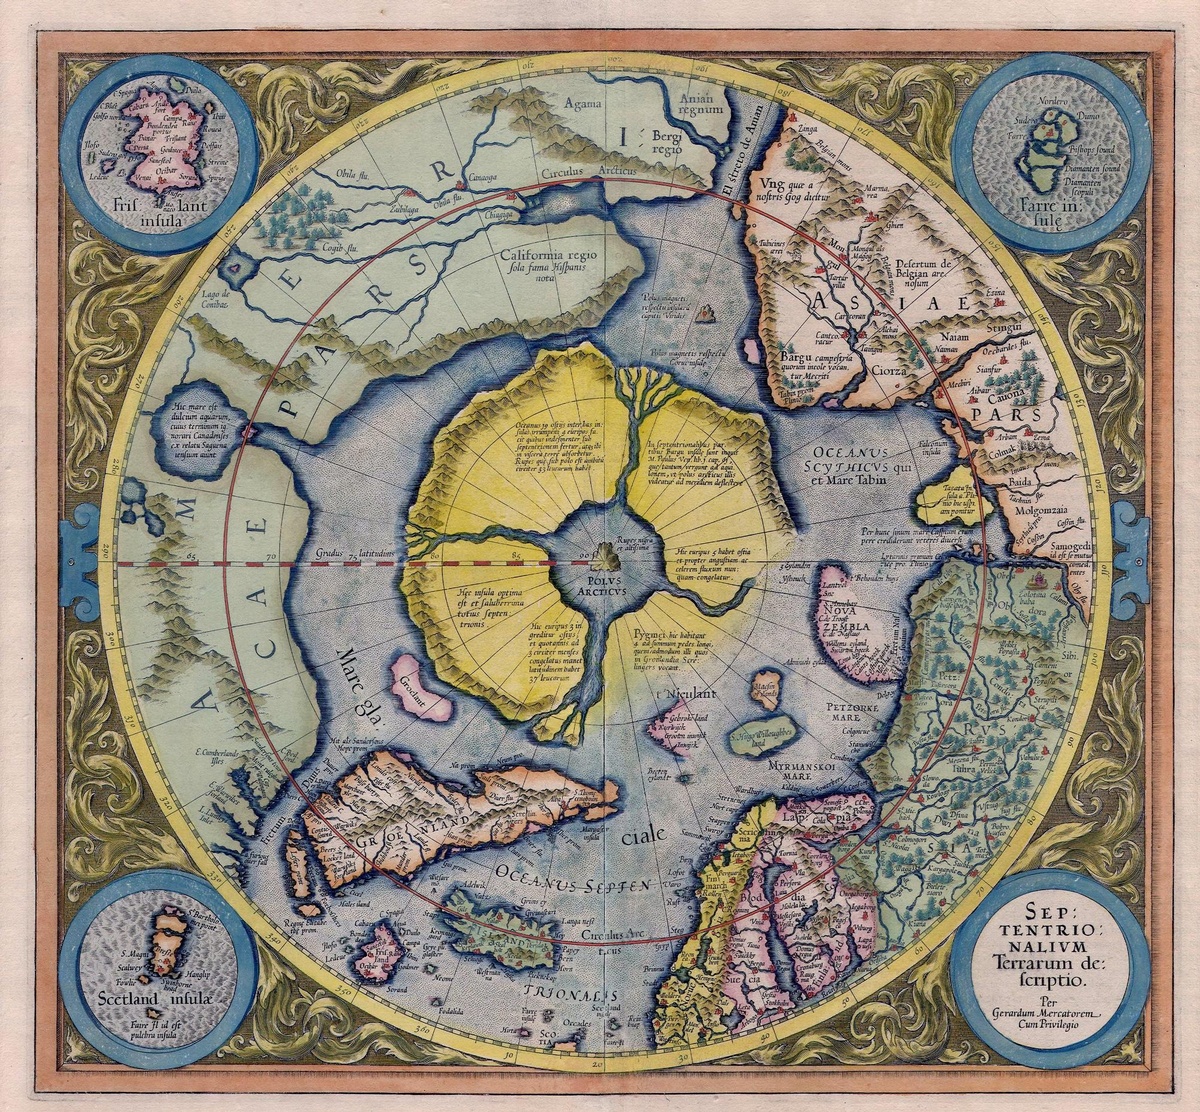 Eine gezeichnete Karte des Nordpols. In einem gelben Kreis sind die nördlichen Teile der Kontinente Europa, Amerika und Asien zu sehen. Grönland grenzt an ein annähernd rundes Festland mit vier Flüssen. In der Mitte befindet sich ein Gewässer, aus dem direkt am Nordpol ein Berg emporragt. © Wikipedia